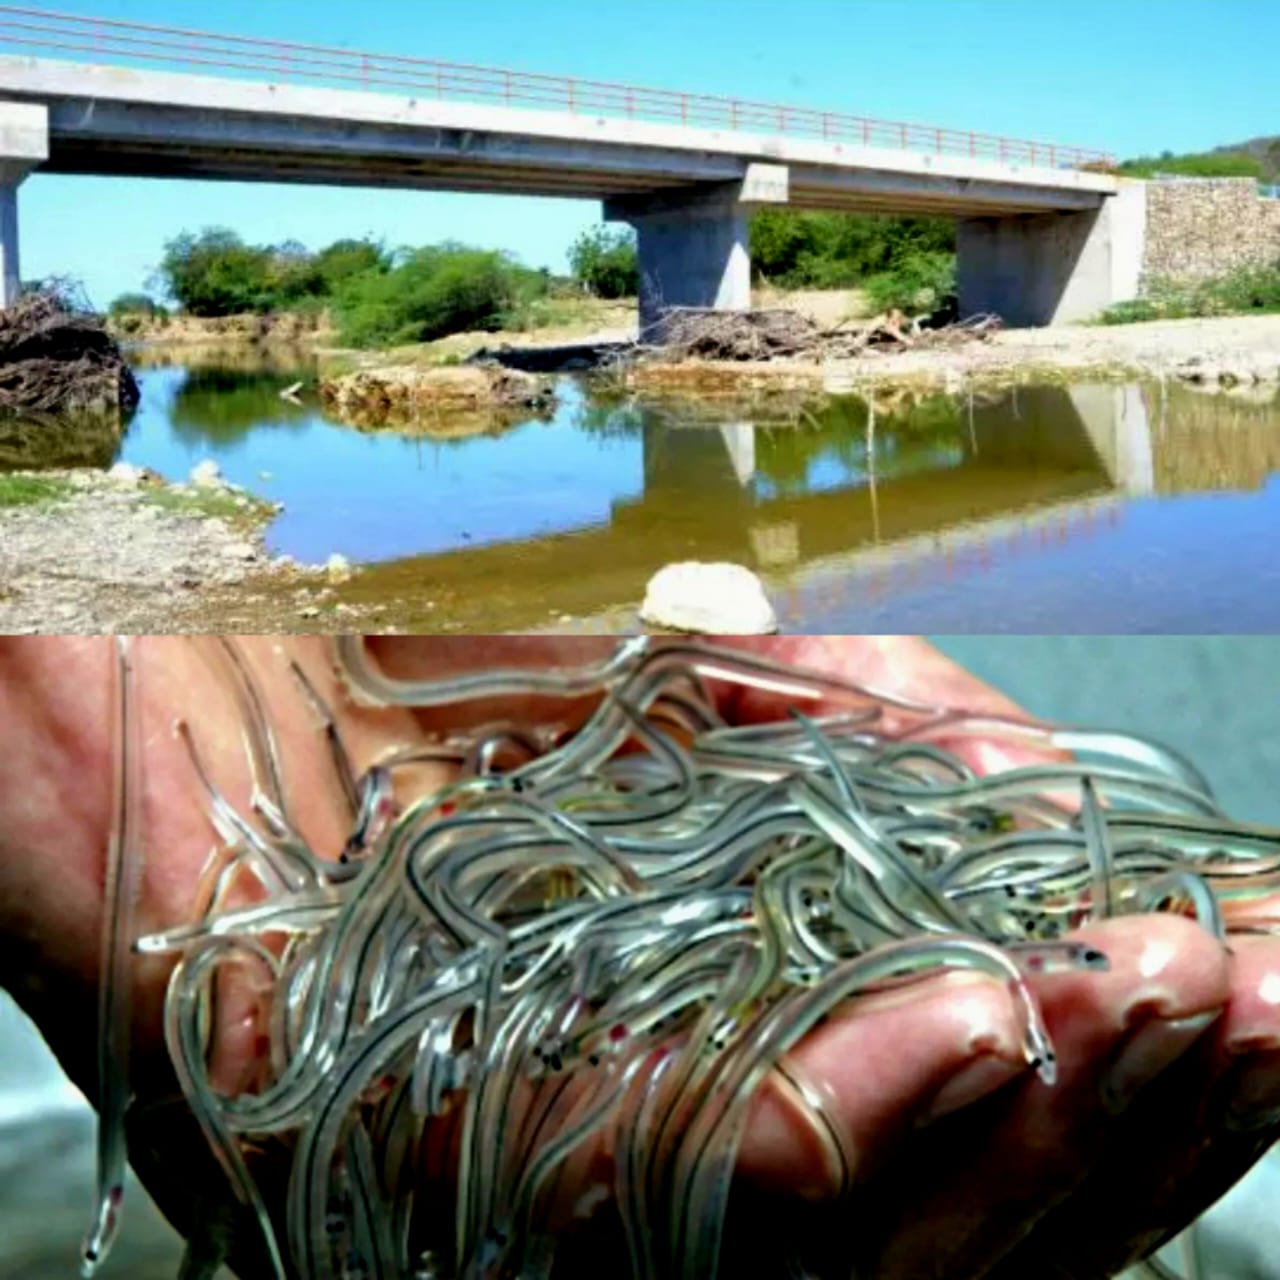 Sequía estacional también afecta a pescadores de anguilas en Puerto Plata